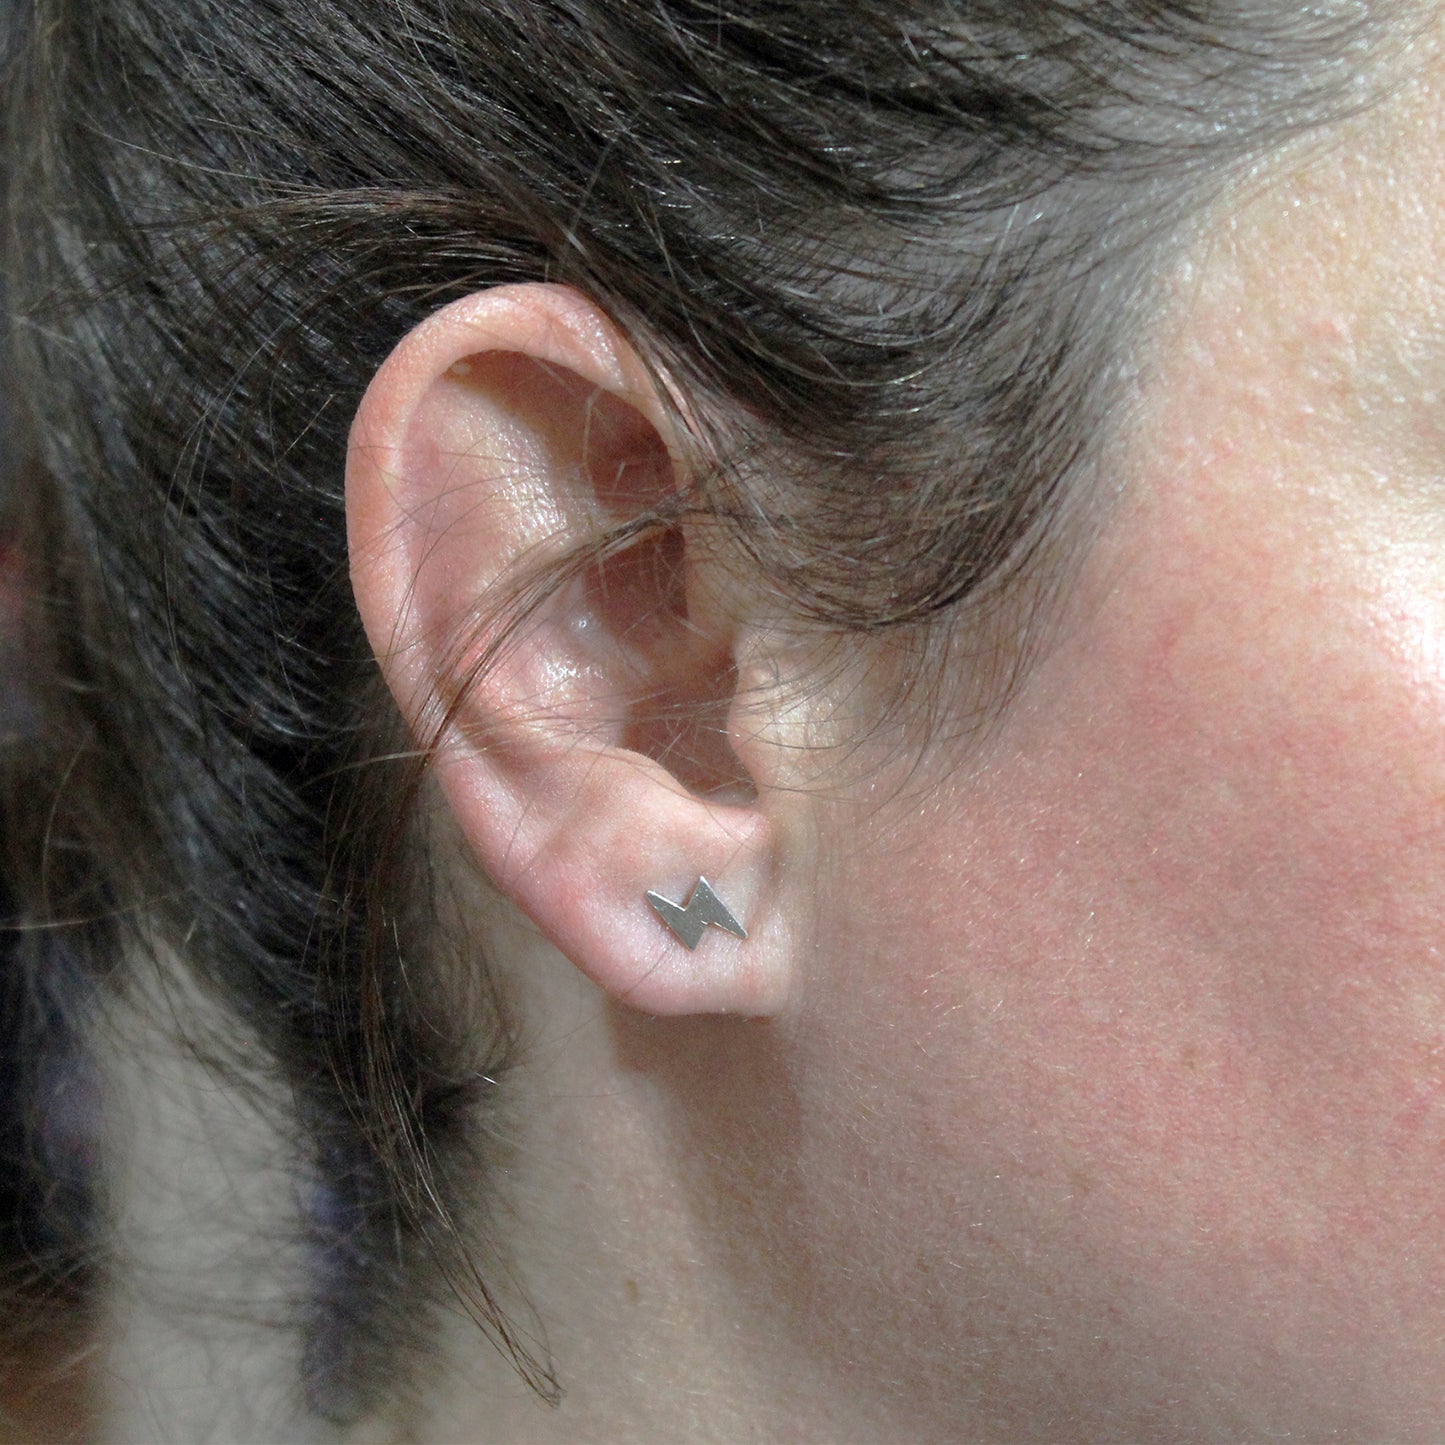 Lightning mini earrings in 925 silver